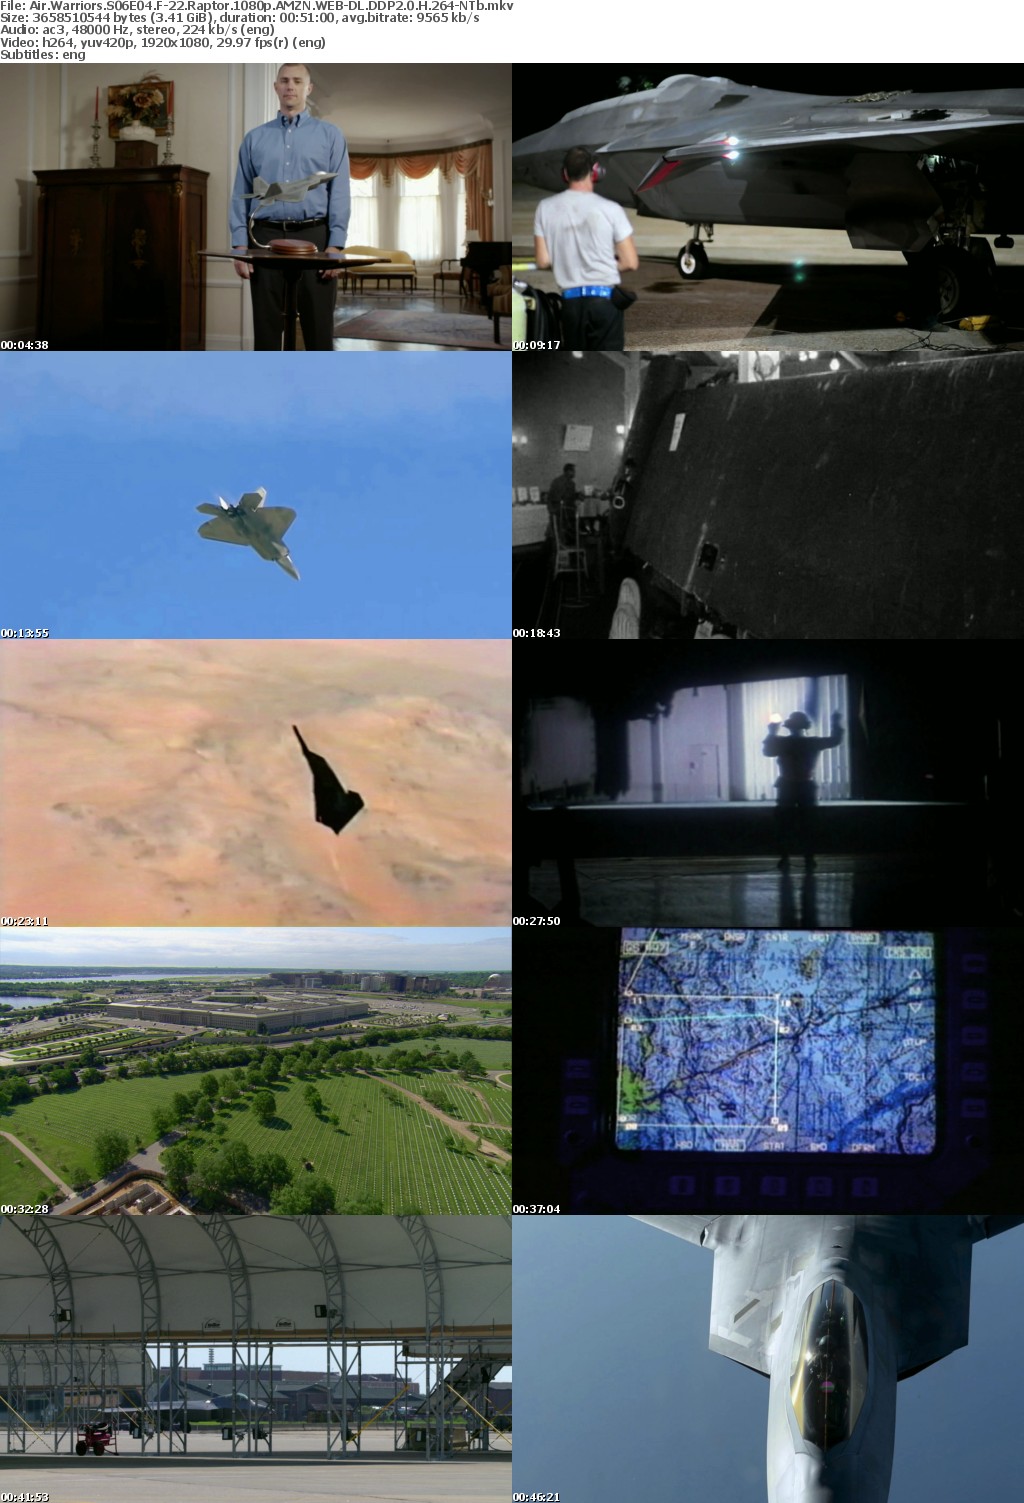 Air Warriors S06E04 F-22 Raptor 1080p AMZN WEB-DL DDP2 0 H 264-NTb